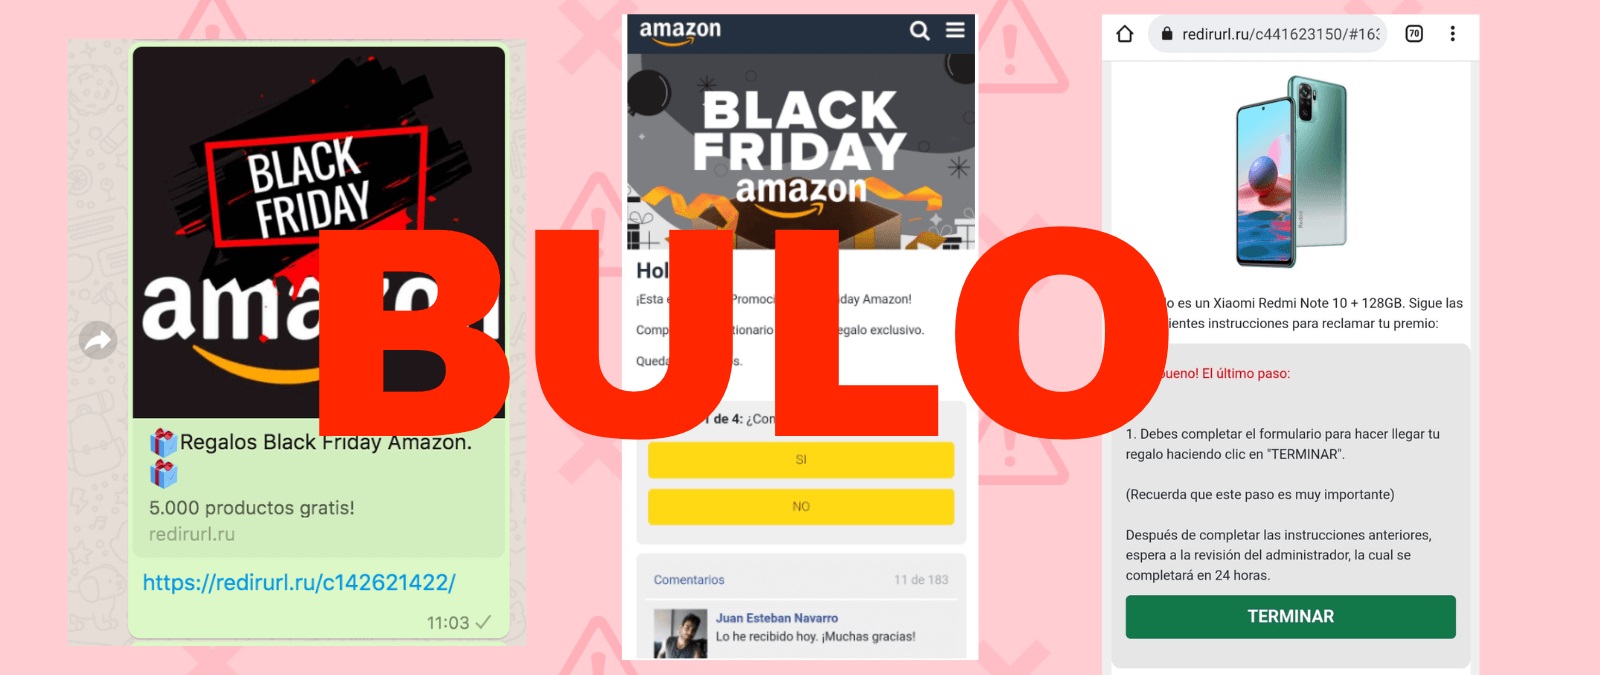 Mediamarkt no te vende un patinete Xiaomi por 1,99 euros: Es una estafa por  Facebook - Meristation